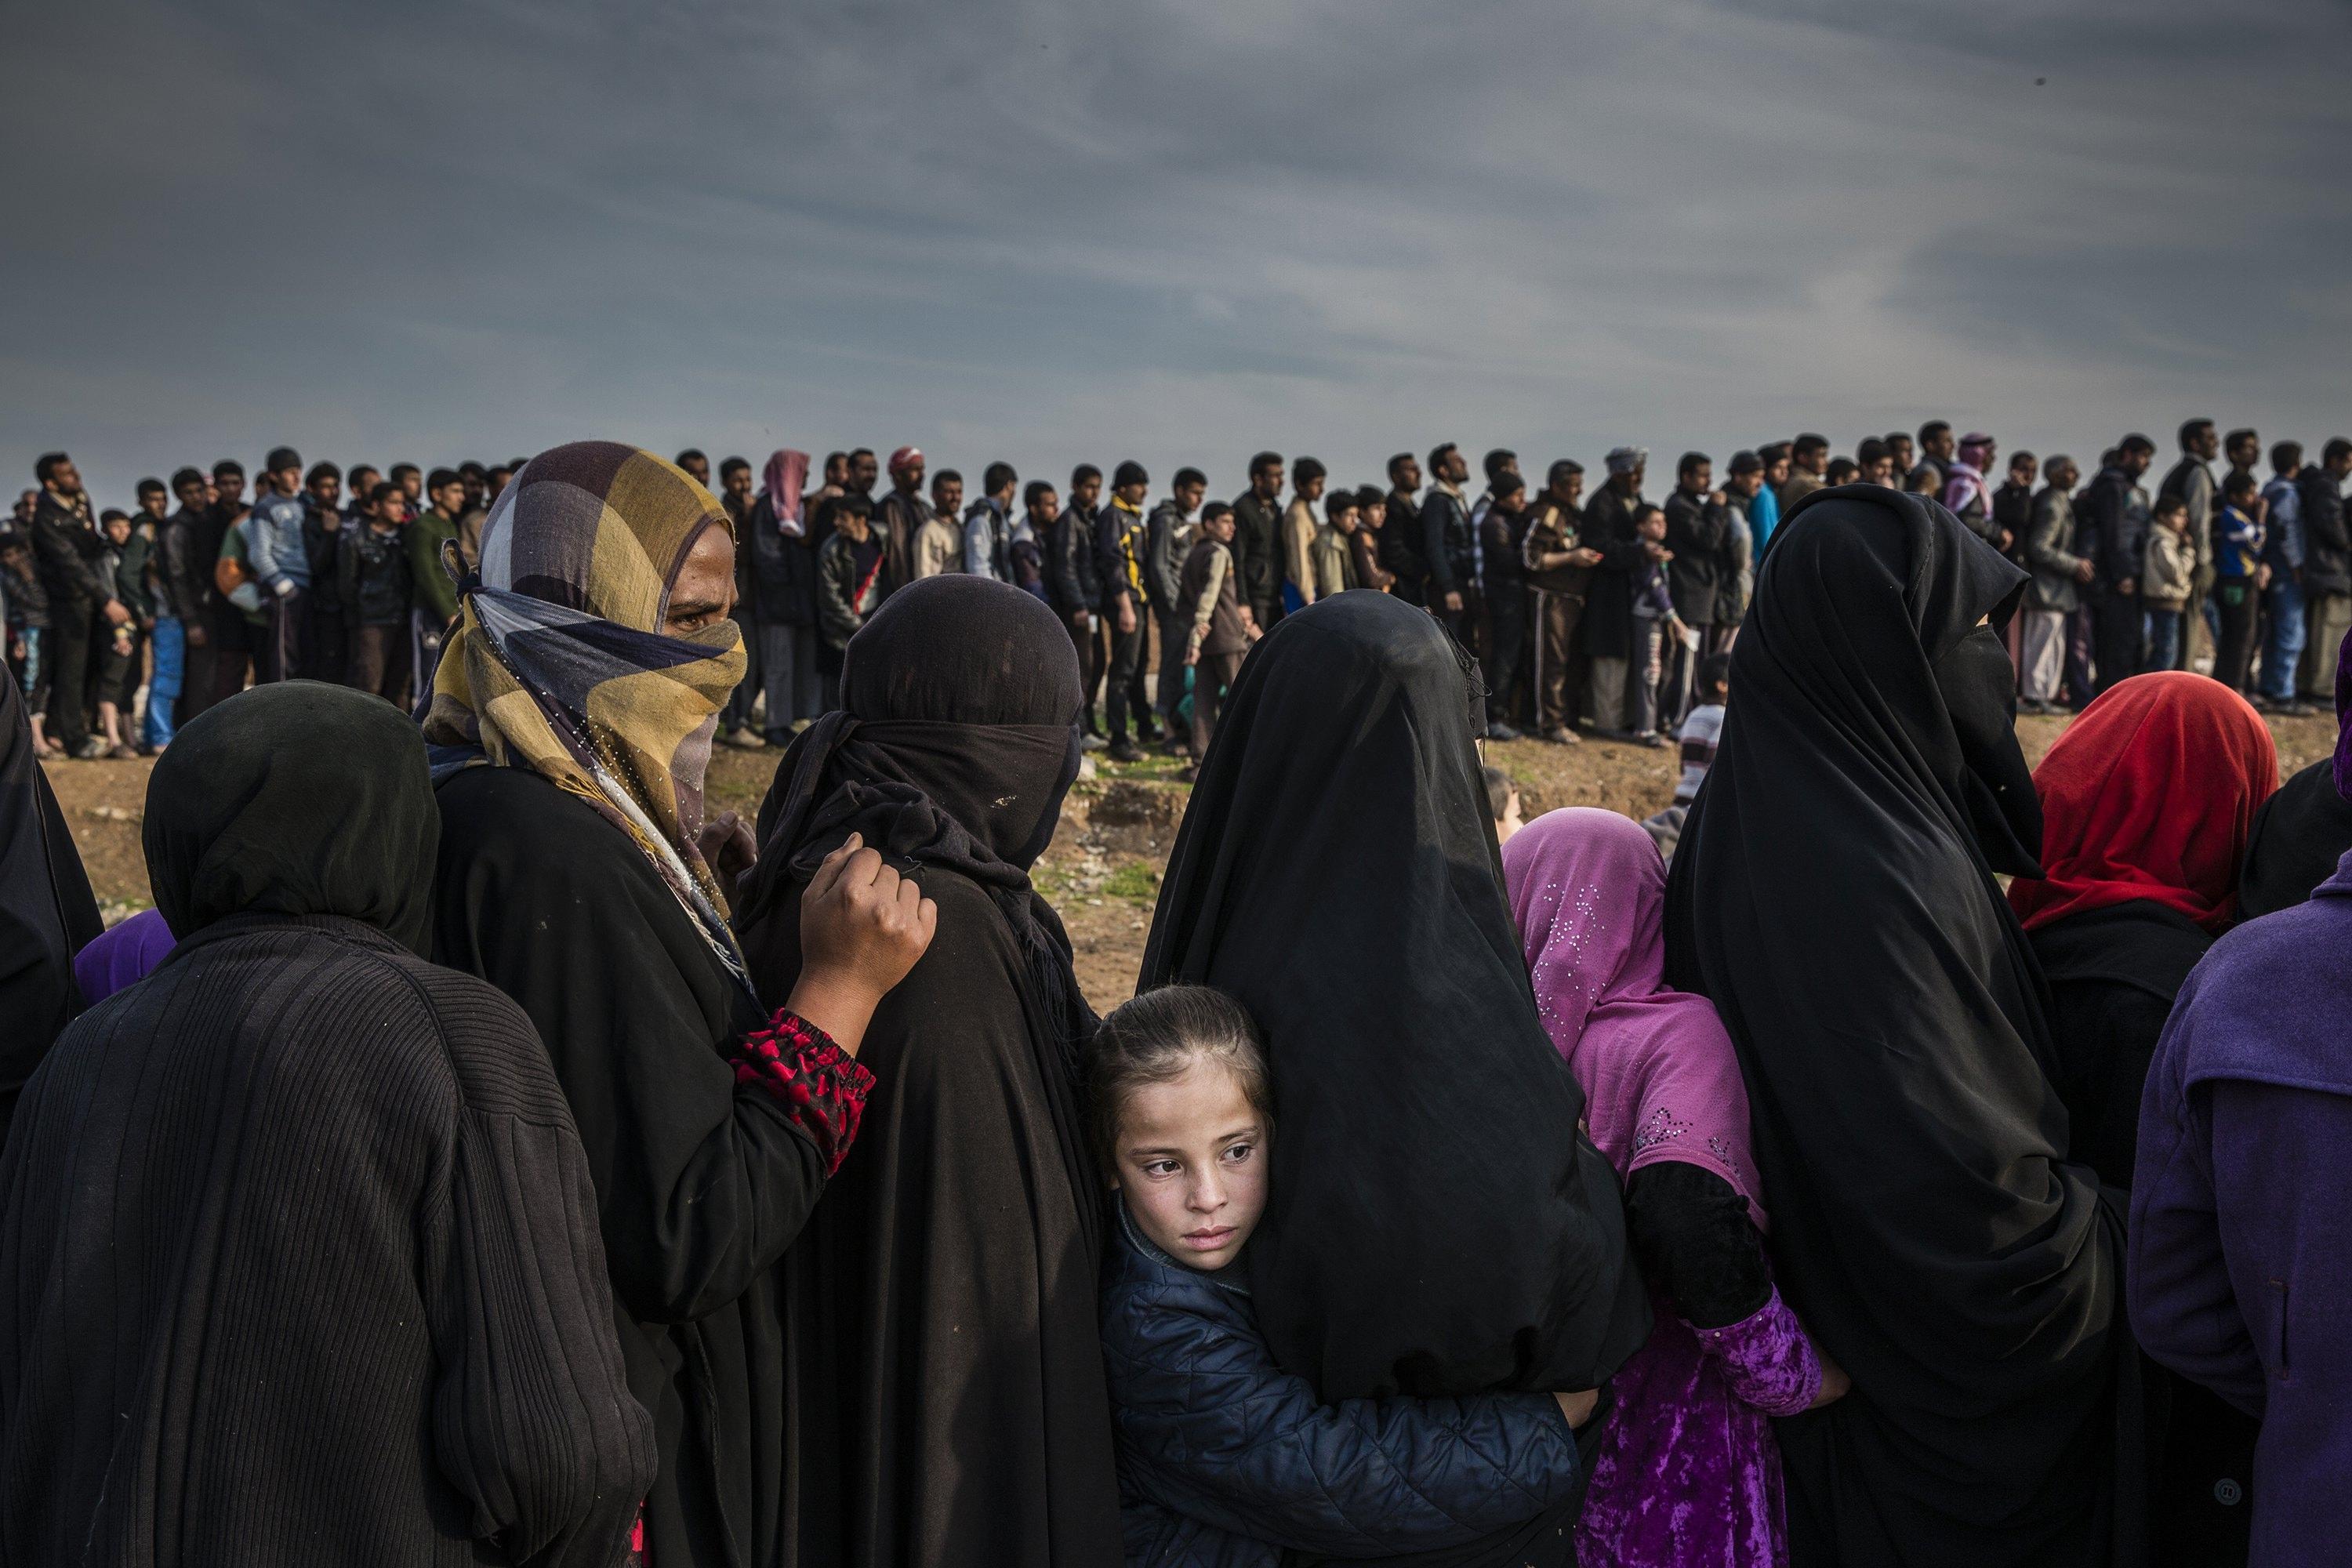 Abitanti di Mosul fanno la fila per avere del cibo mentre sono in corso gli scontri per liberare la città dai miliziani del gruppo Stato islamico. Ivor Prickett per il New York Times (15 marzo 2017)